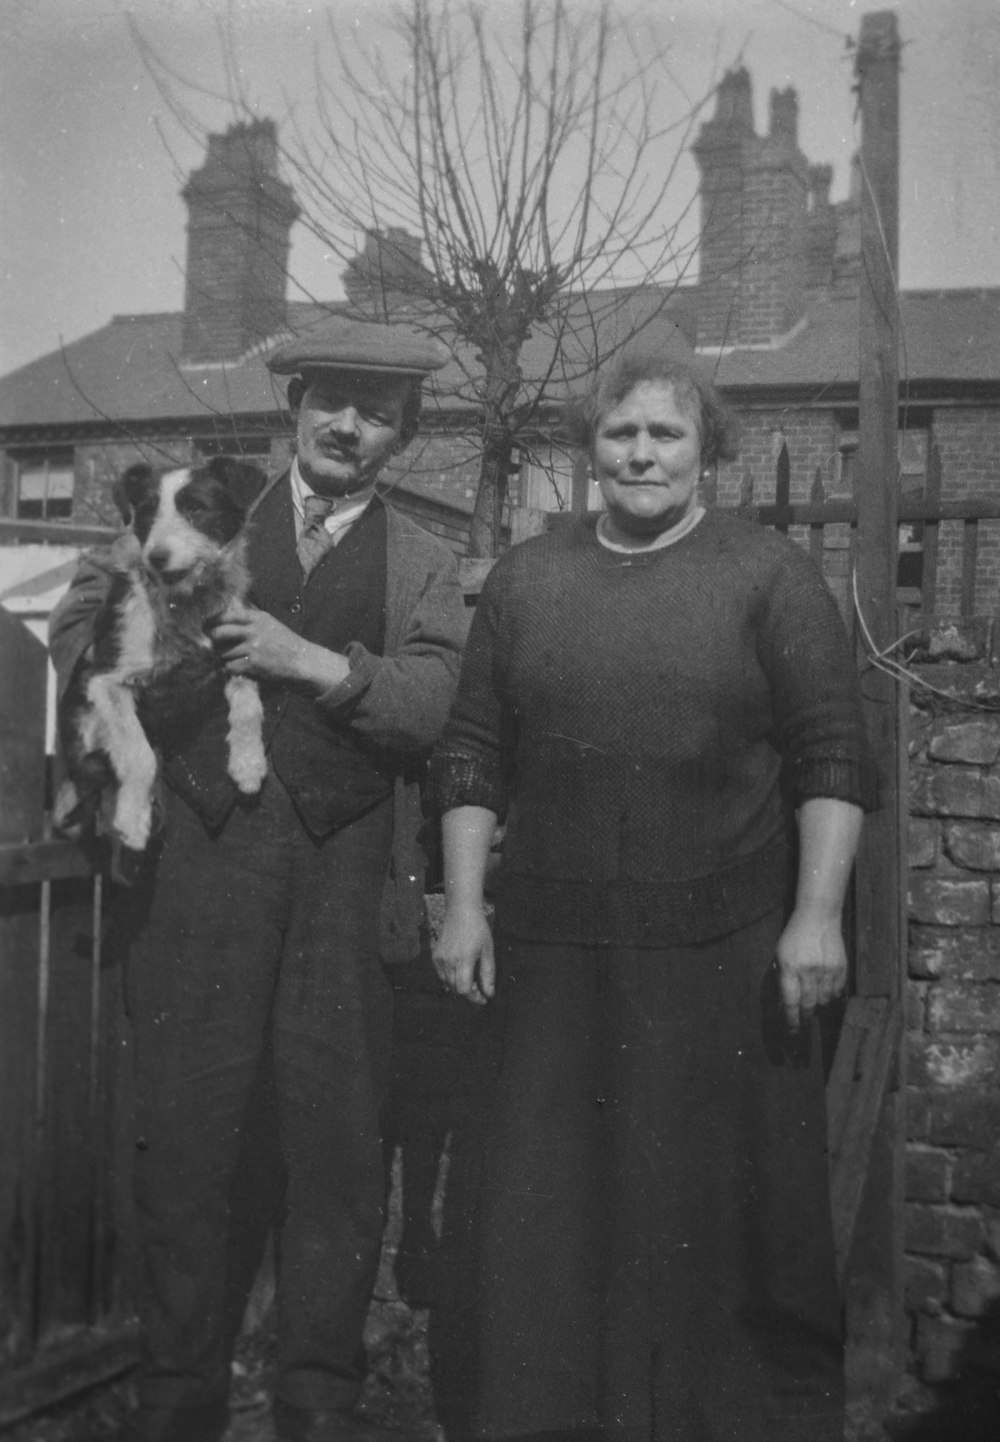 개를 안고 있는 남자와 여자의 오래된 흑백 사진